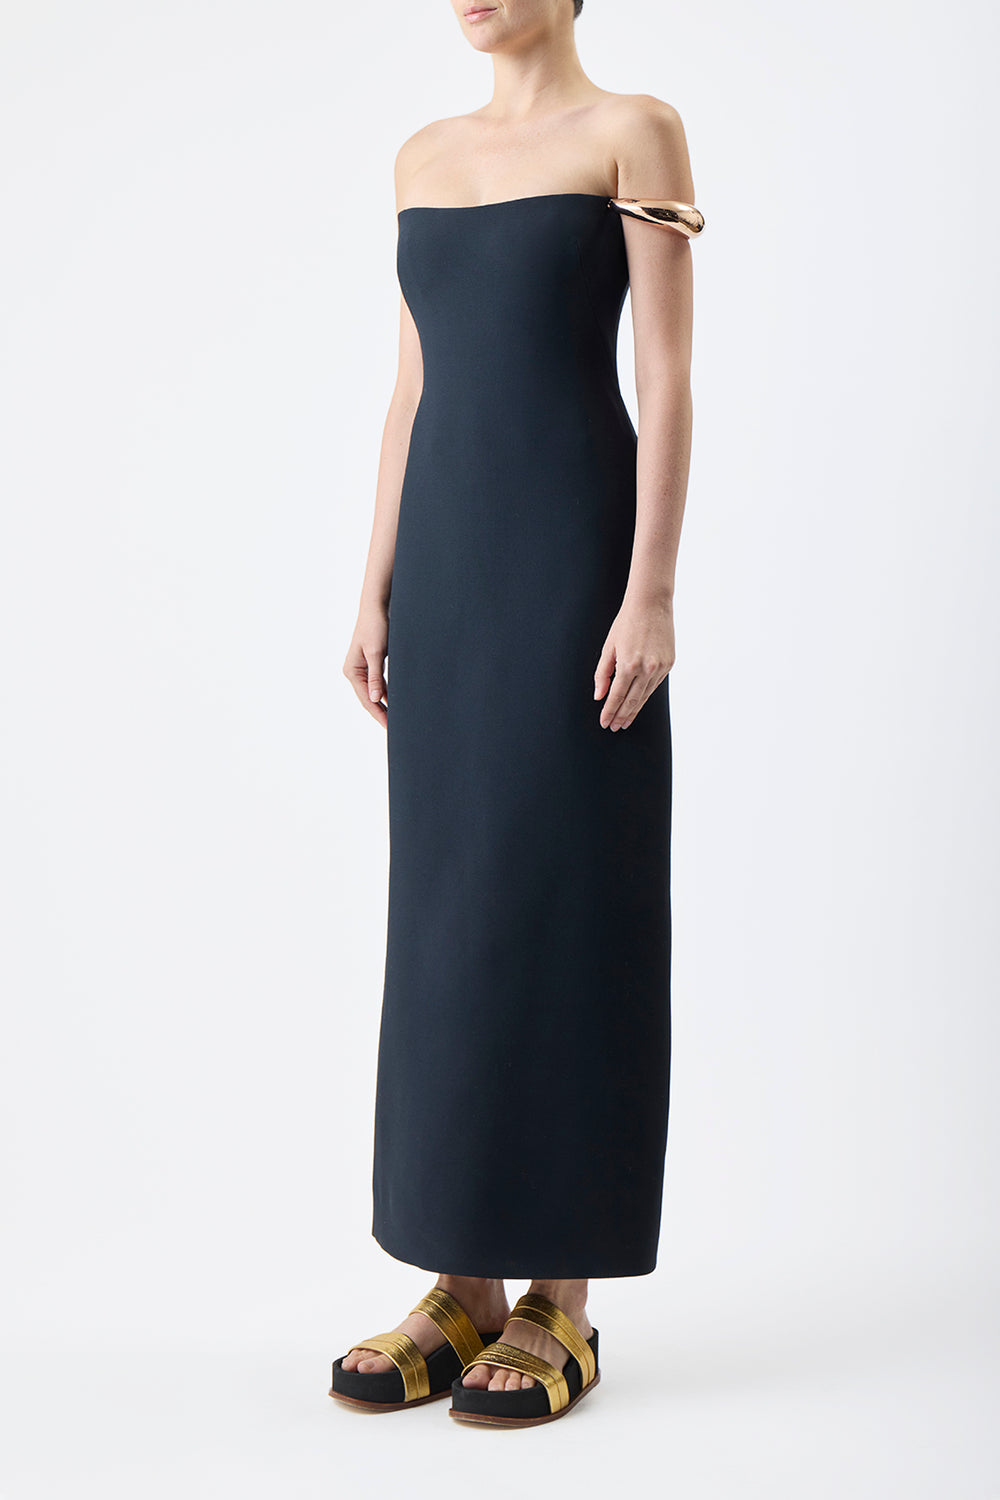 Anica Dress in Black Wool Silk Cady – Gabriela Hearst